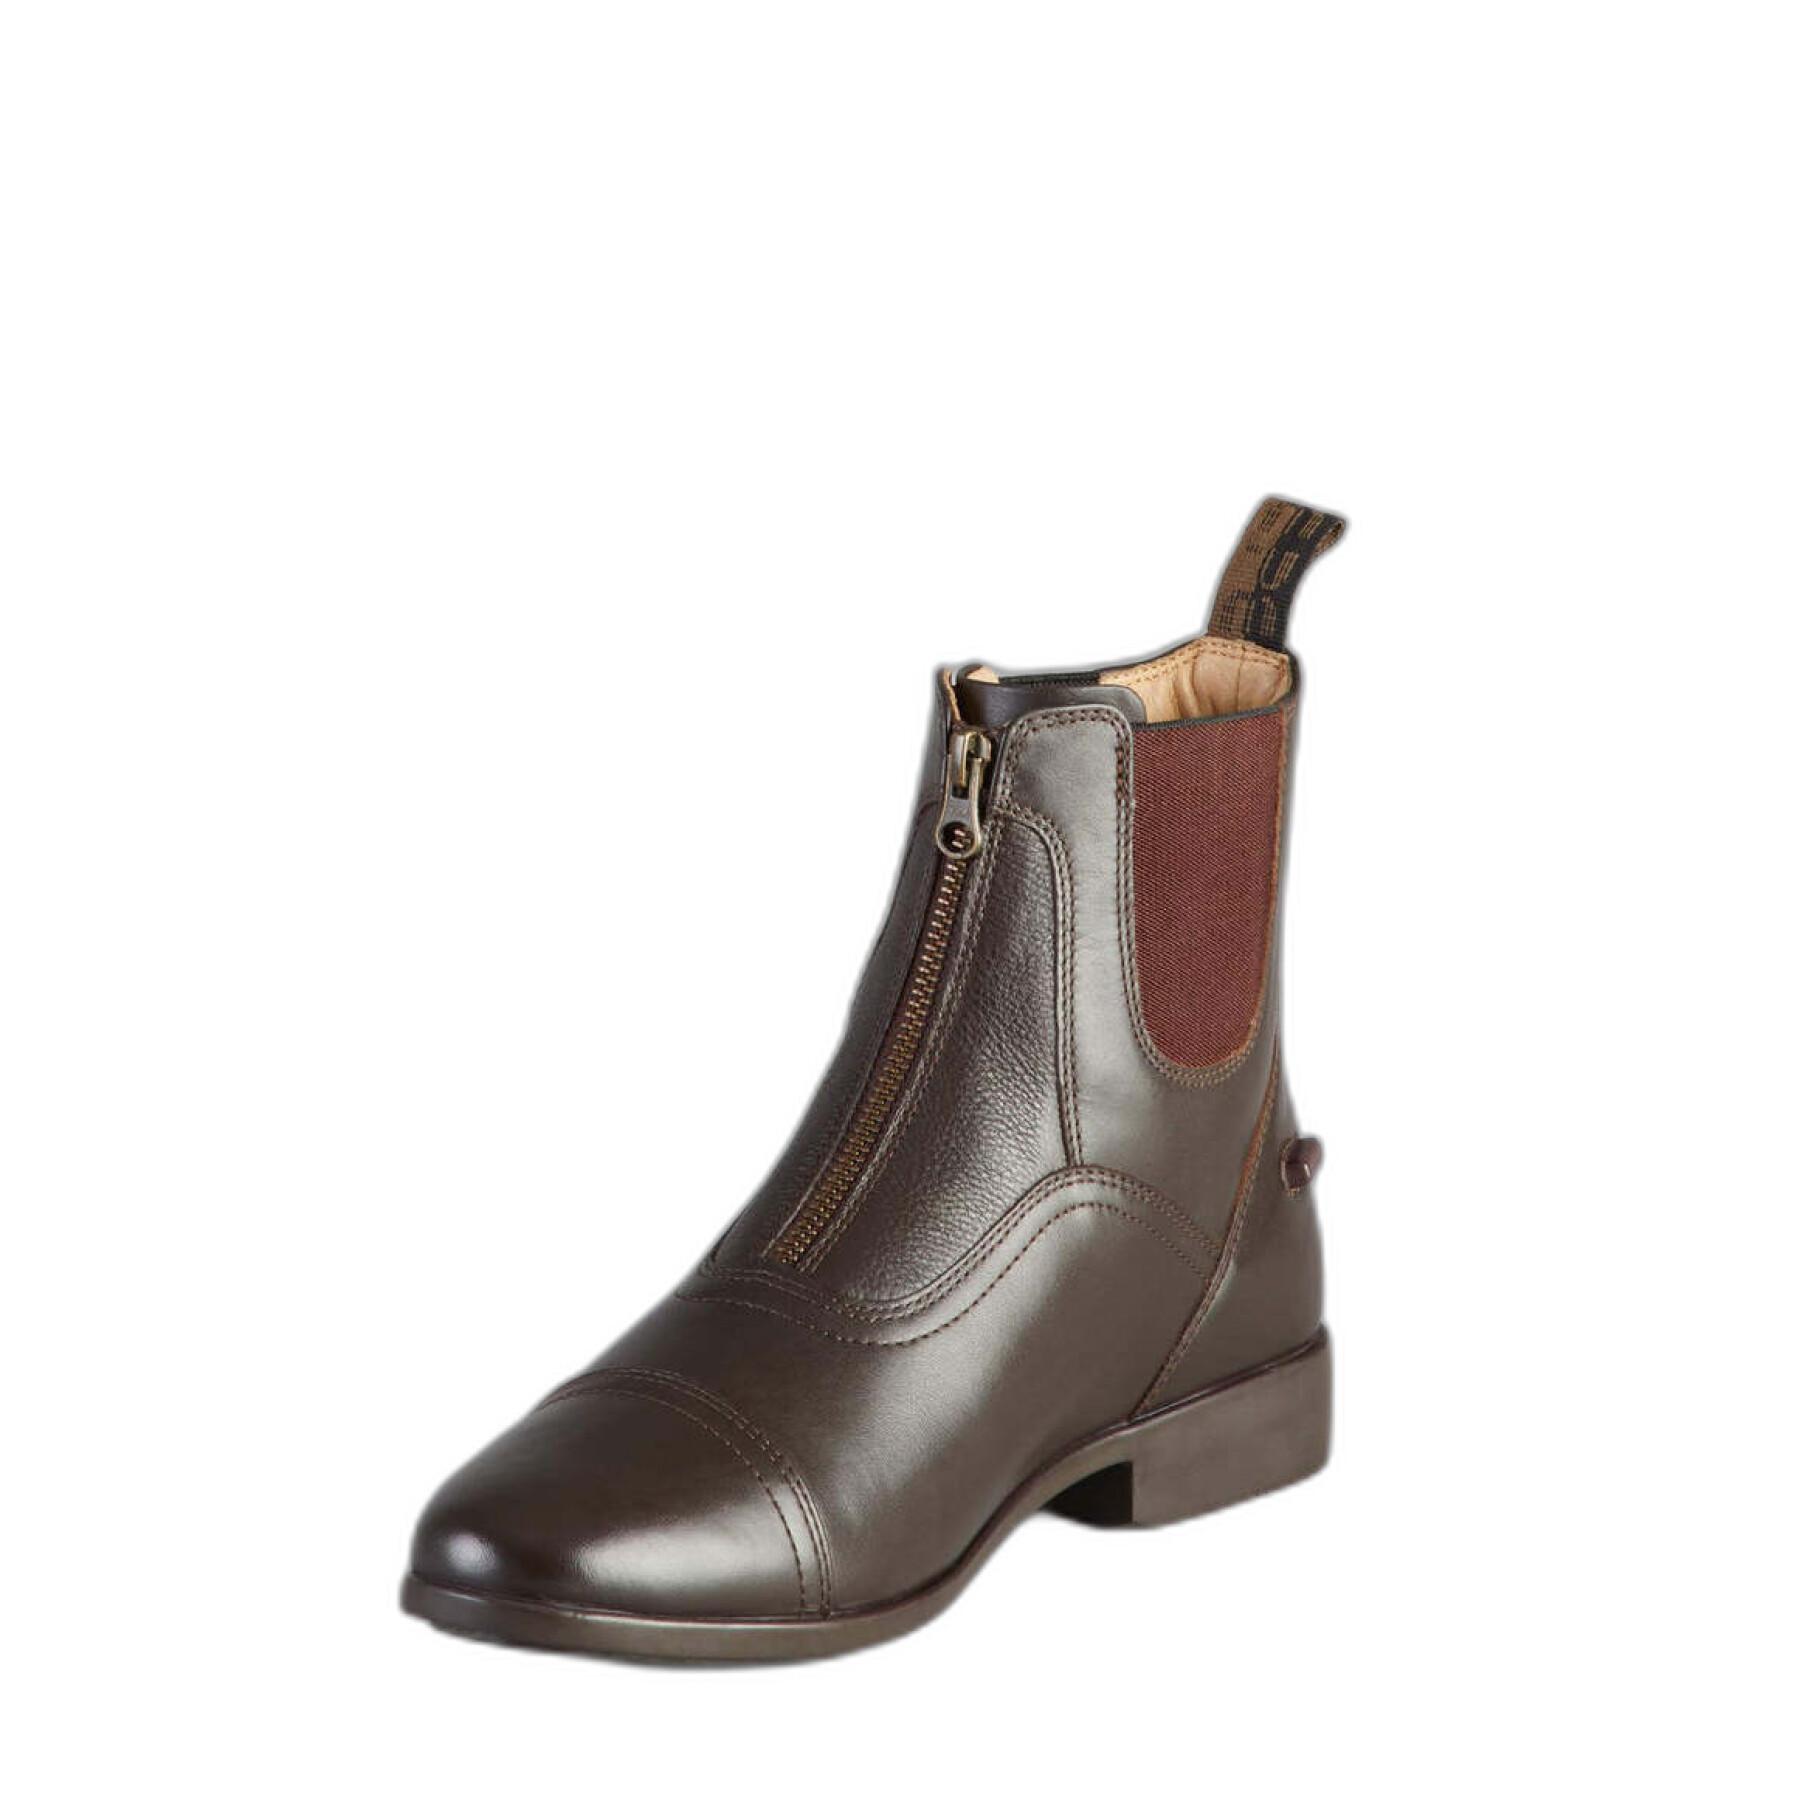 Boots leather riding shoes Premier Equine Virtus